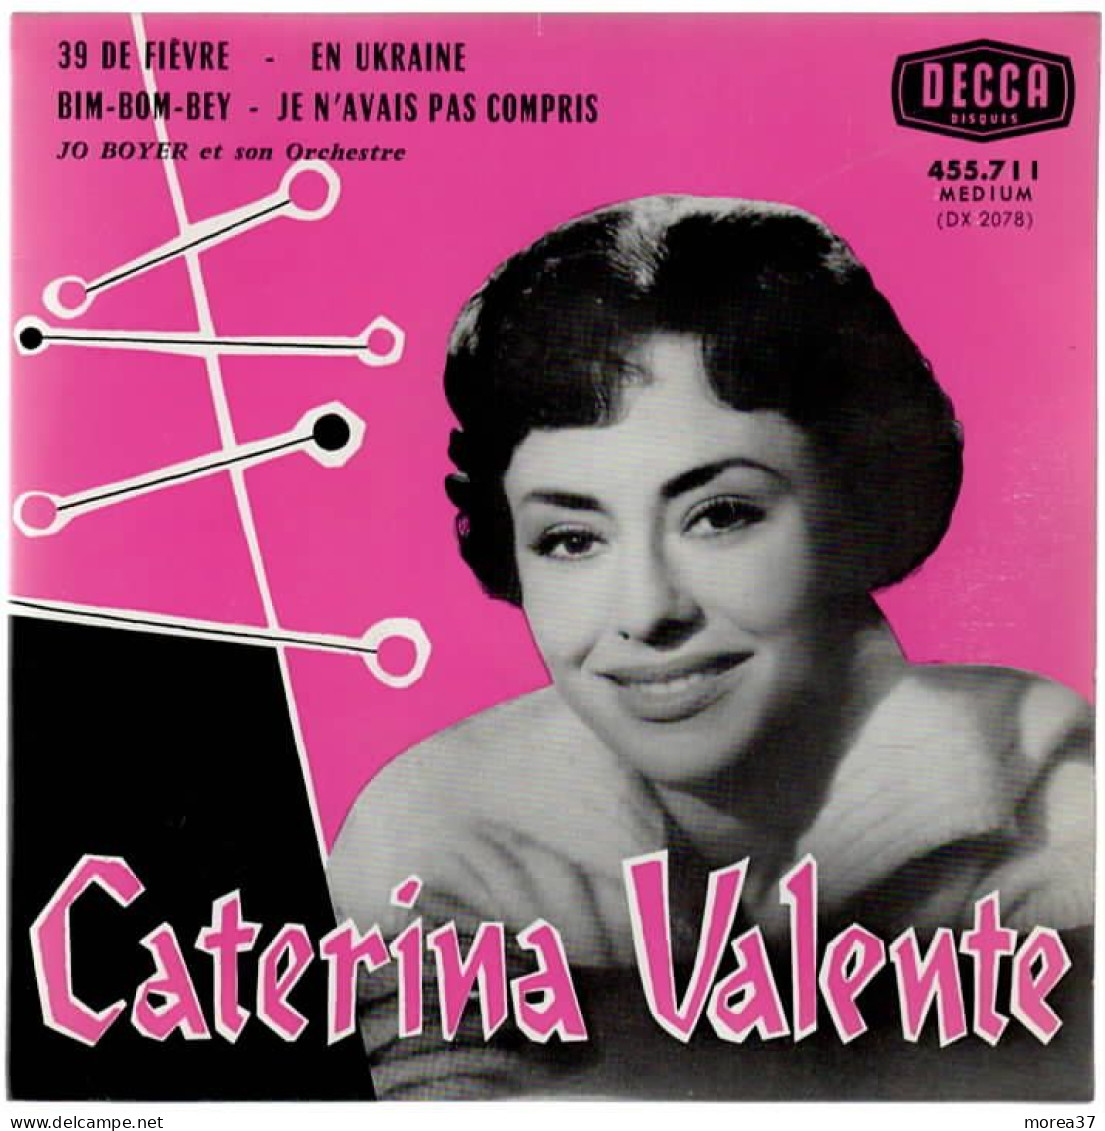 CATERINA VALENTE   39 De Fièvre   DECCA  455.711 - Autres - Musique Française